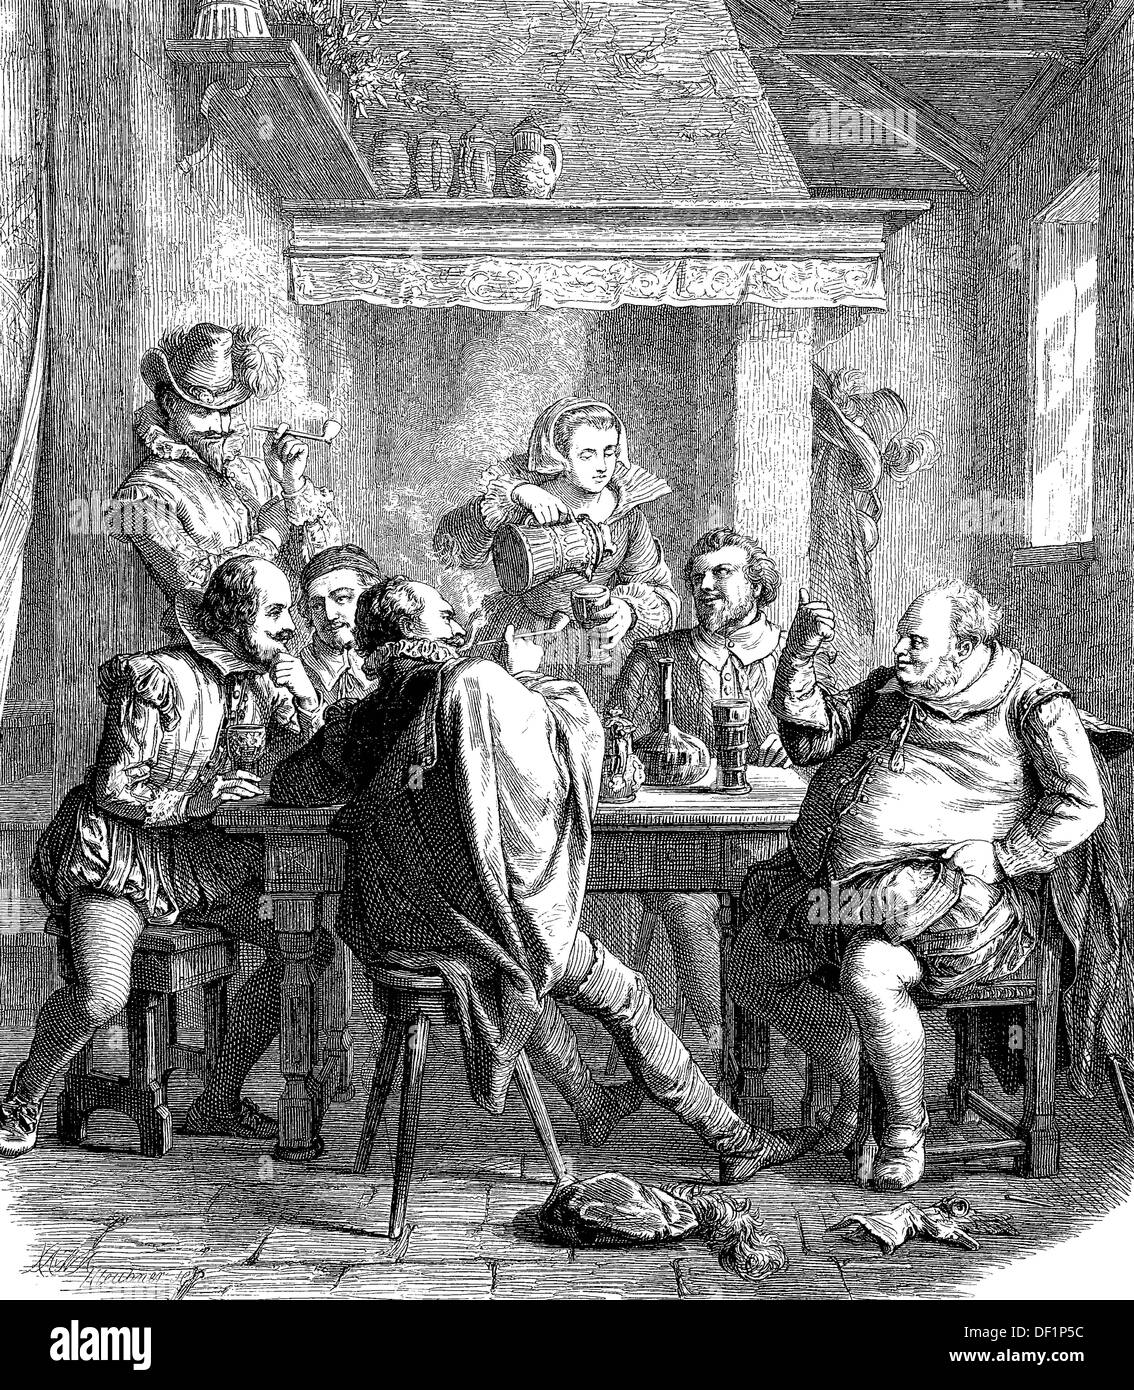 William Shakespeare avec ses amis à la taverne 'pour sirène', gravure sur bois de 1864 Banque D'Images